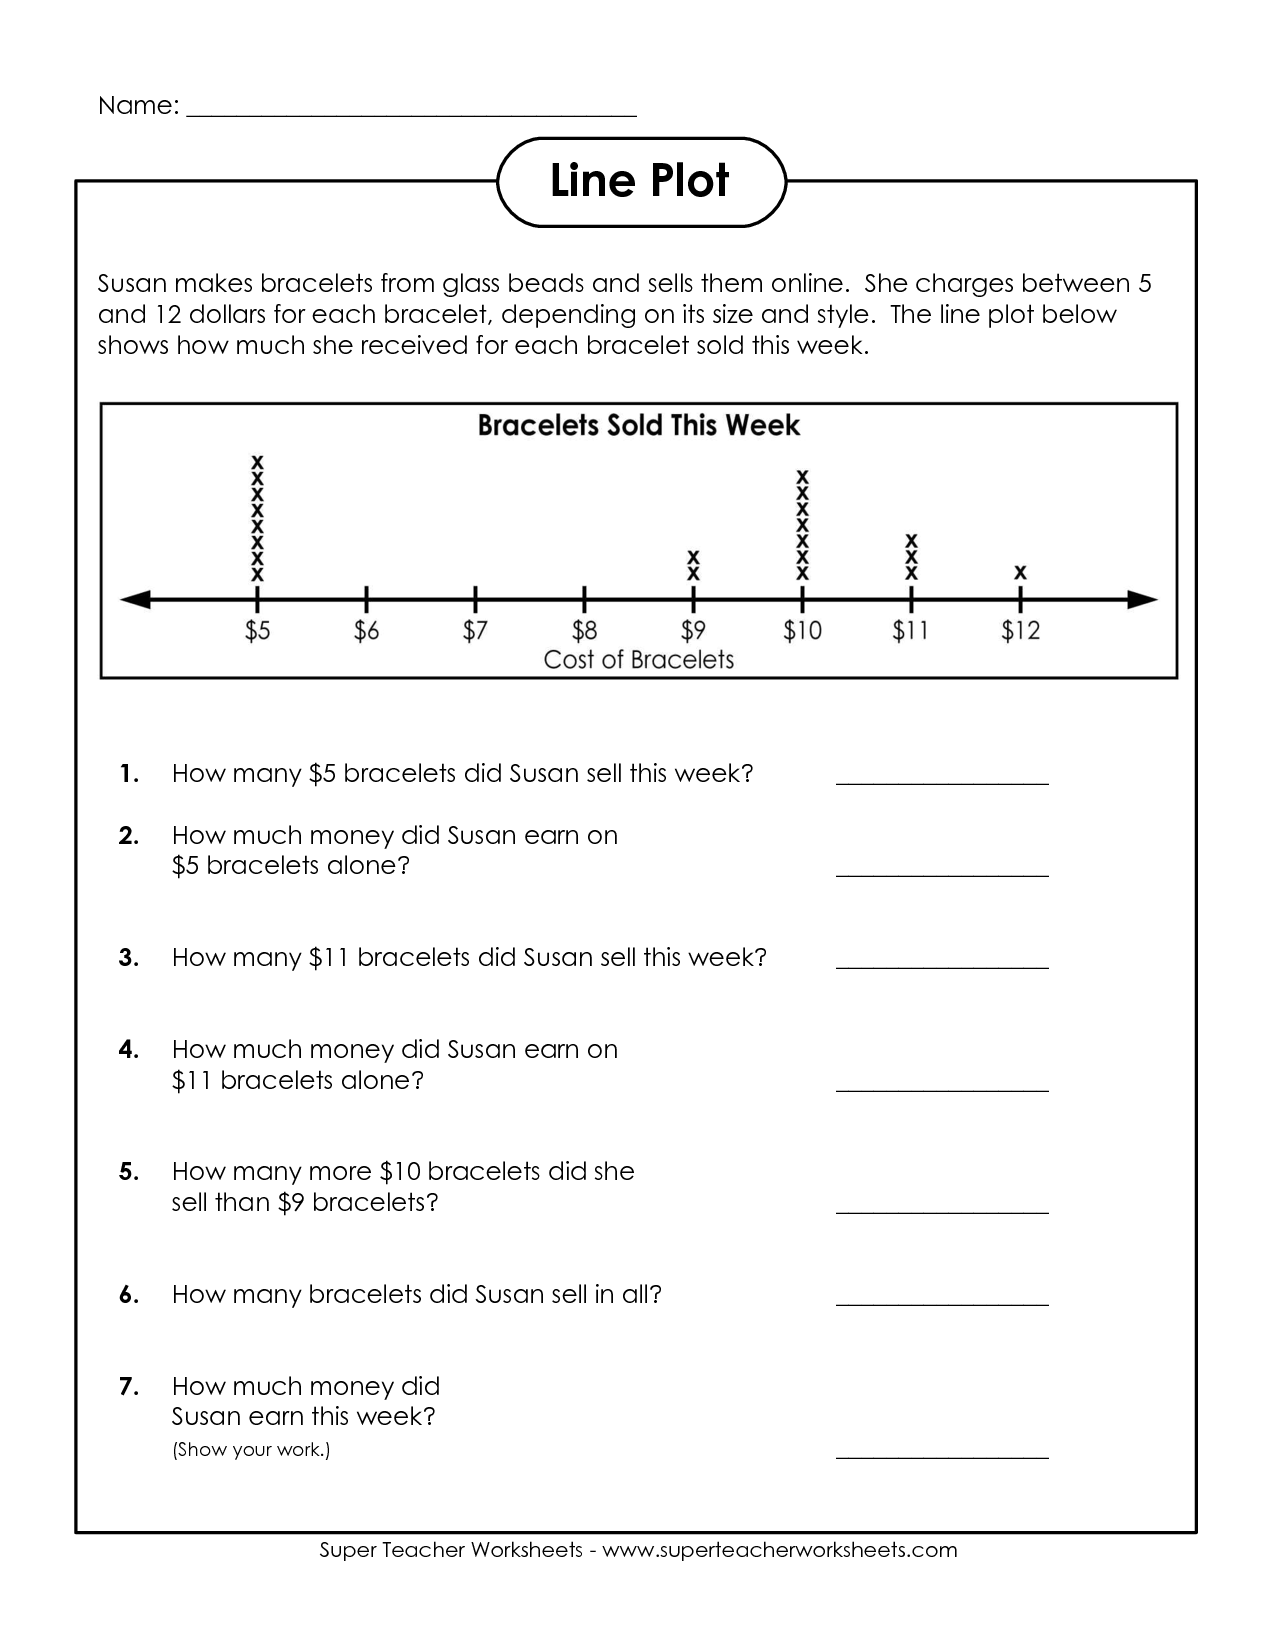 Line Plot Worksheets 5th Grade Image